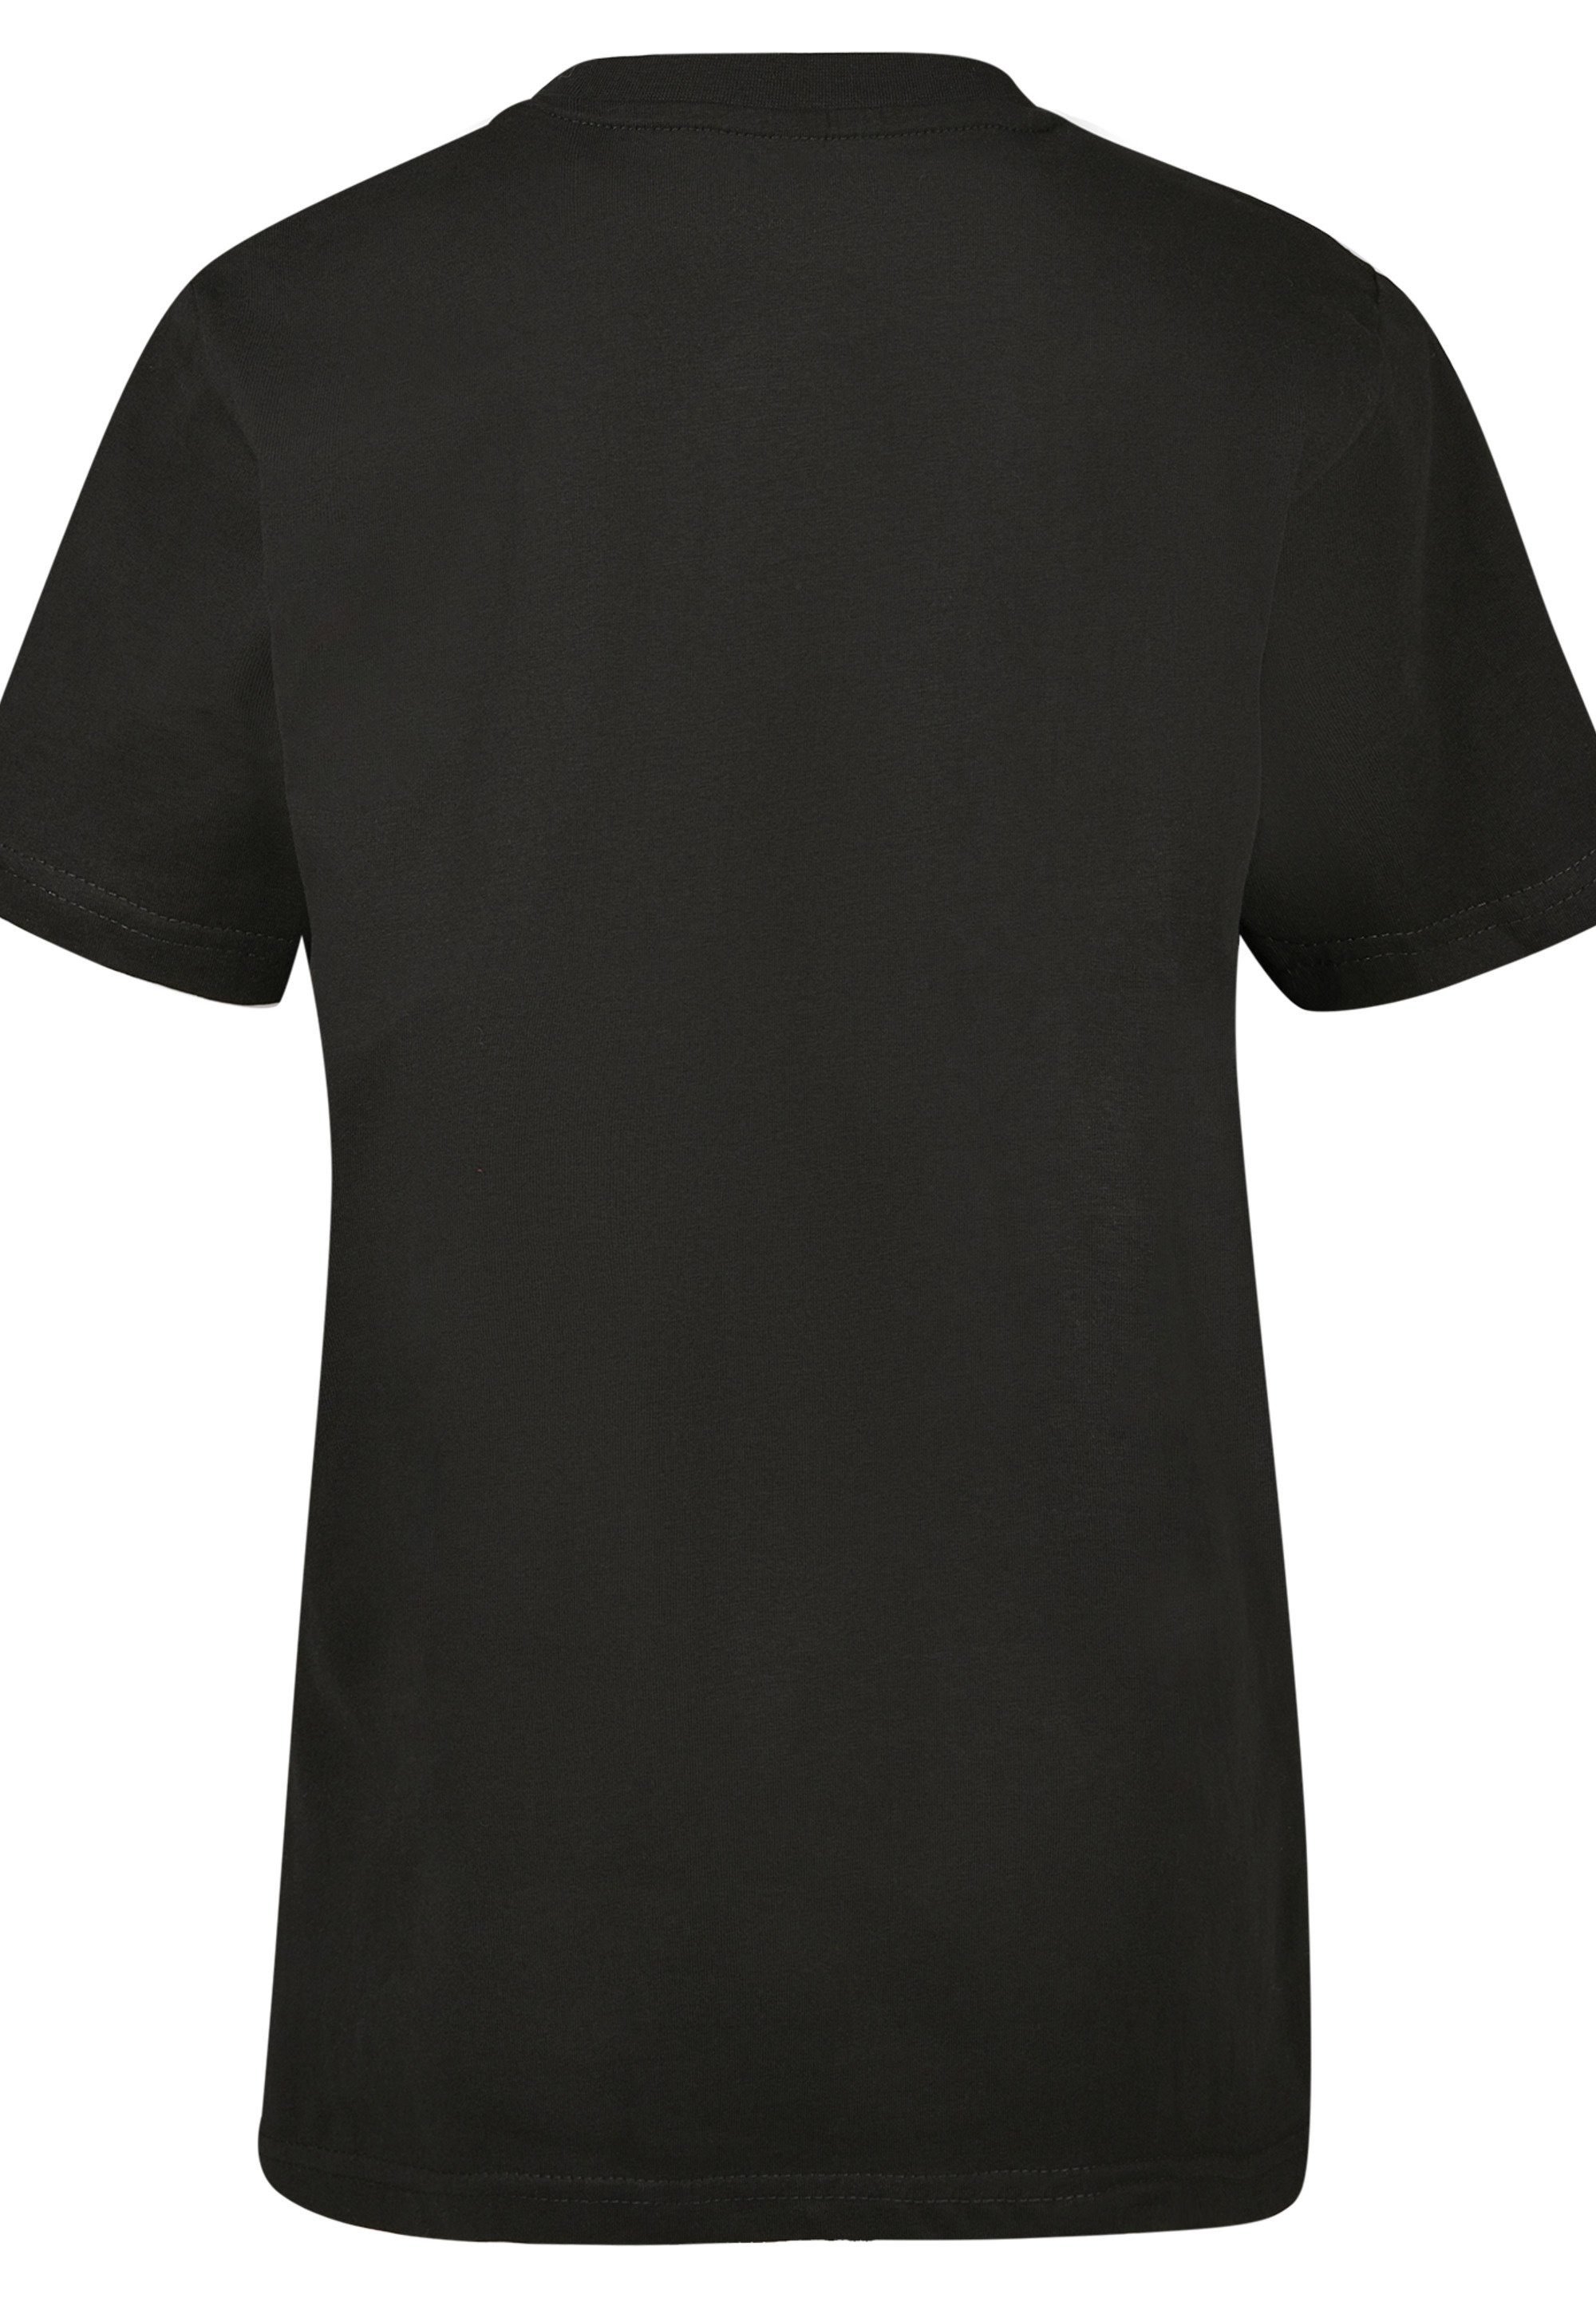 F4NT4STIC T-Shirt DC Jungen,Mädchen,Bedruckt, Comics Merch, Unisex lizenziertes Logo Batman DC Comics Spot Kinder,Premium T-Shirt Offiziell